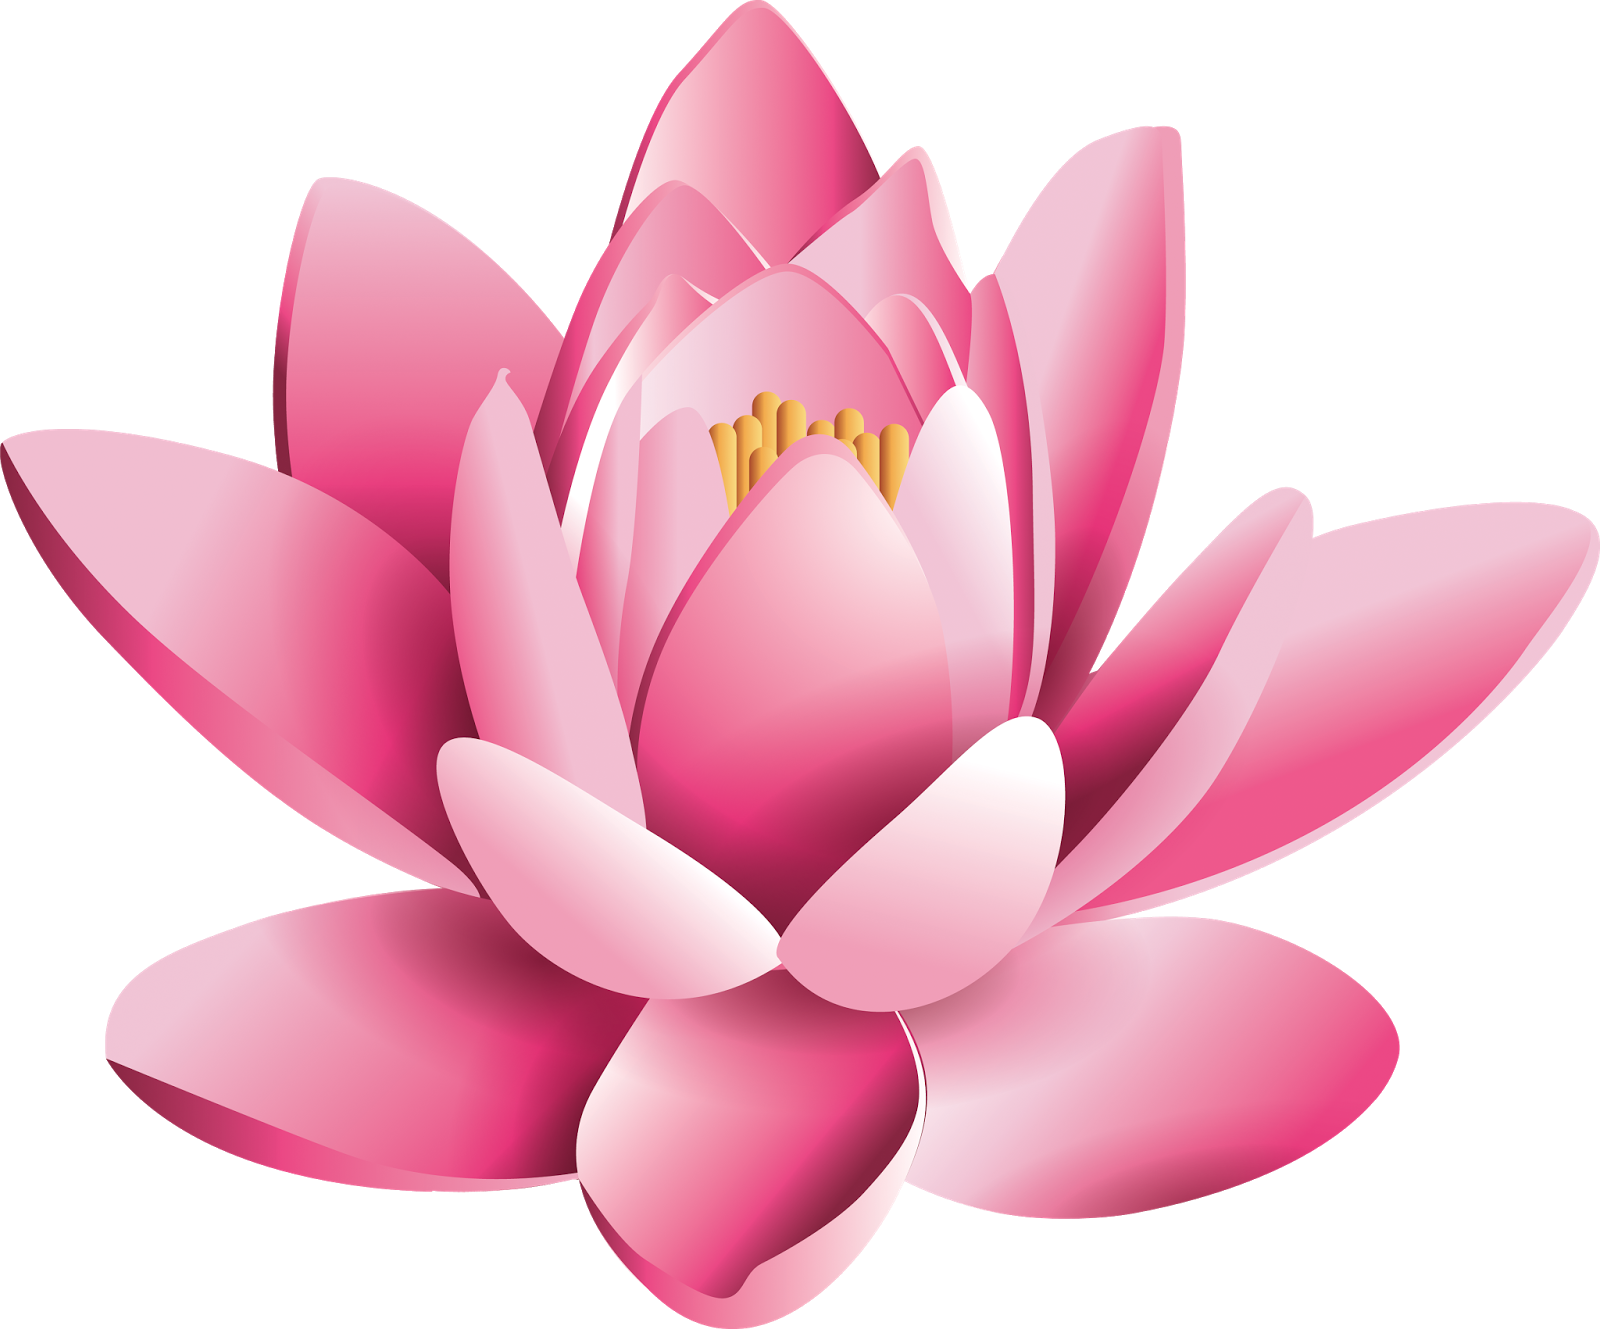 Pink Lotus Flower Pic Free Photo PNG Image